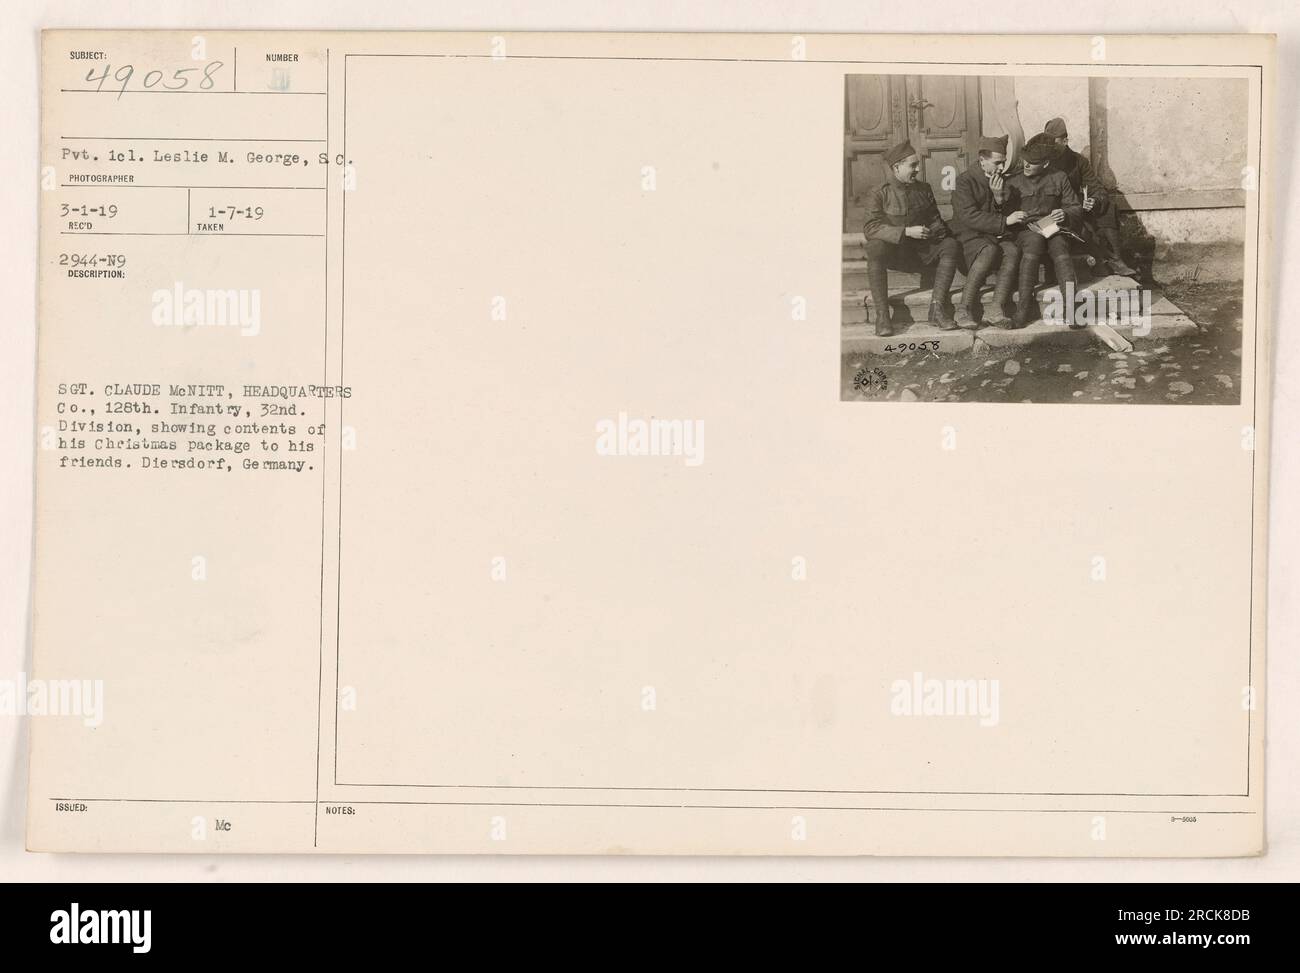 "Sergeant Claude McNitt von Headquarters Co., 128. Infanterie, 32. Division entfaltet den Inhalt seines Weihnachtspakets und zeigt ihn seinen Freunden in Diersdorf, Deutschland. Foto von Pvt. Lel. Leslie M. George am 1. März 1919. Offiziell dokumentiert als Reco 2944-19 und am 7. Januar 1919 mit den Mc-ANMERKUNGEN 4-9058.“ Stockfoto